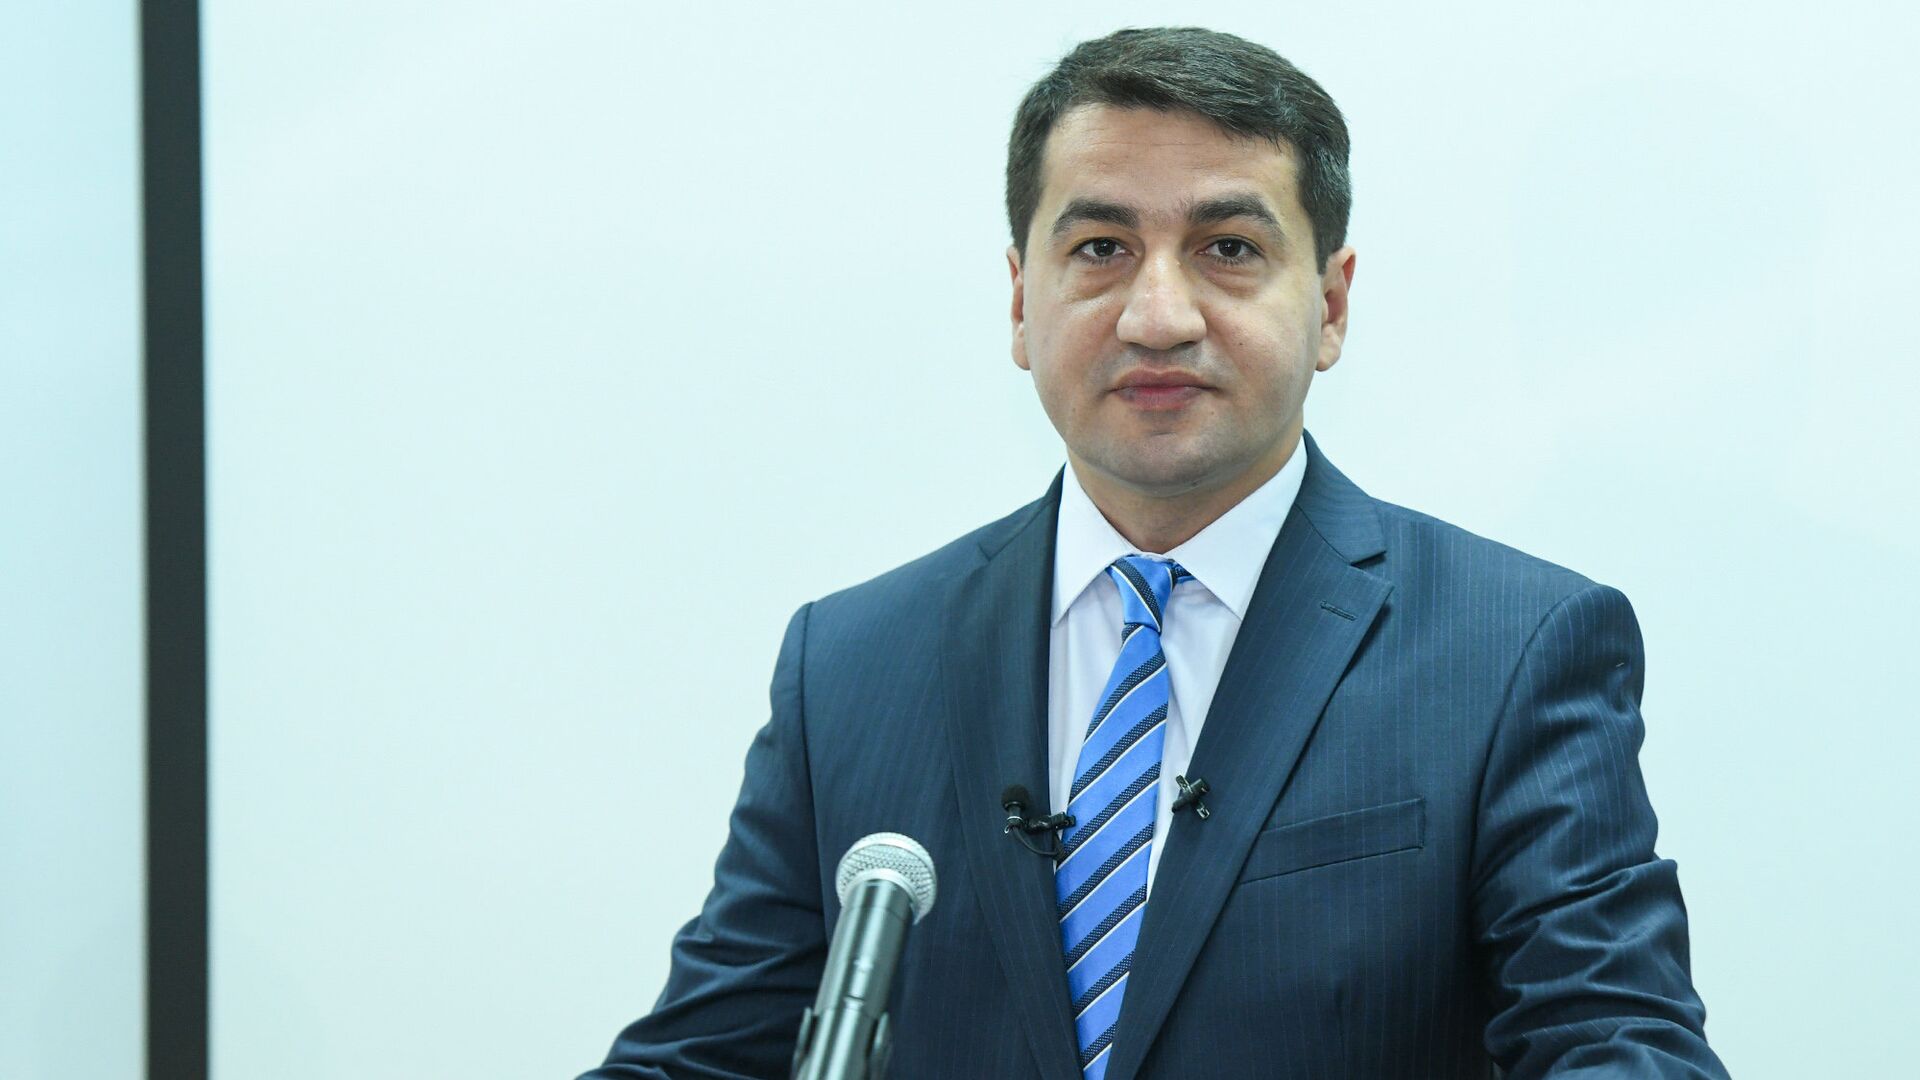 Официальный представитель министерства иностранных дел Азербайджана Хикмет Гаджиев в ходе пресс-конференции в Баку, 11 июля 2018 года - Sputnik Азербайджан, 1920, 02.05.2022